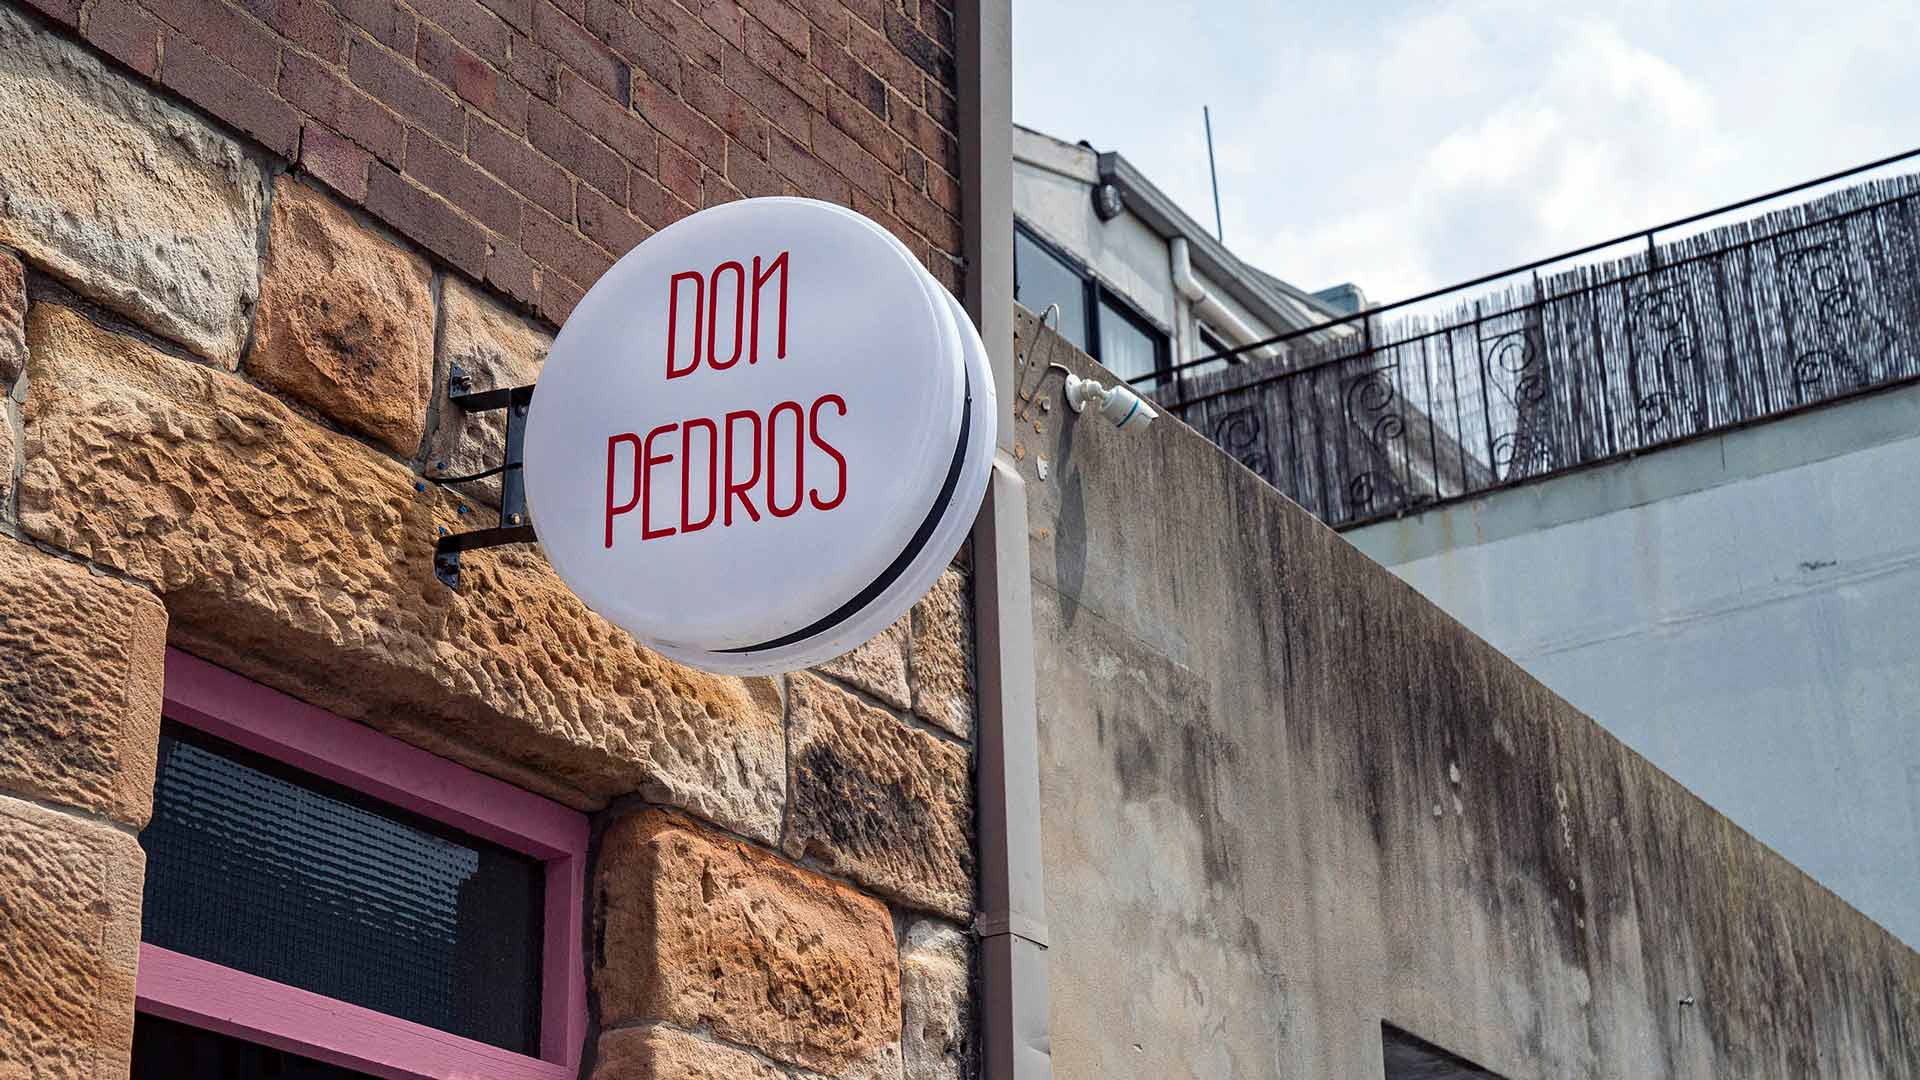 Don Pedros